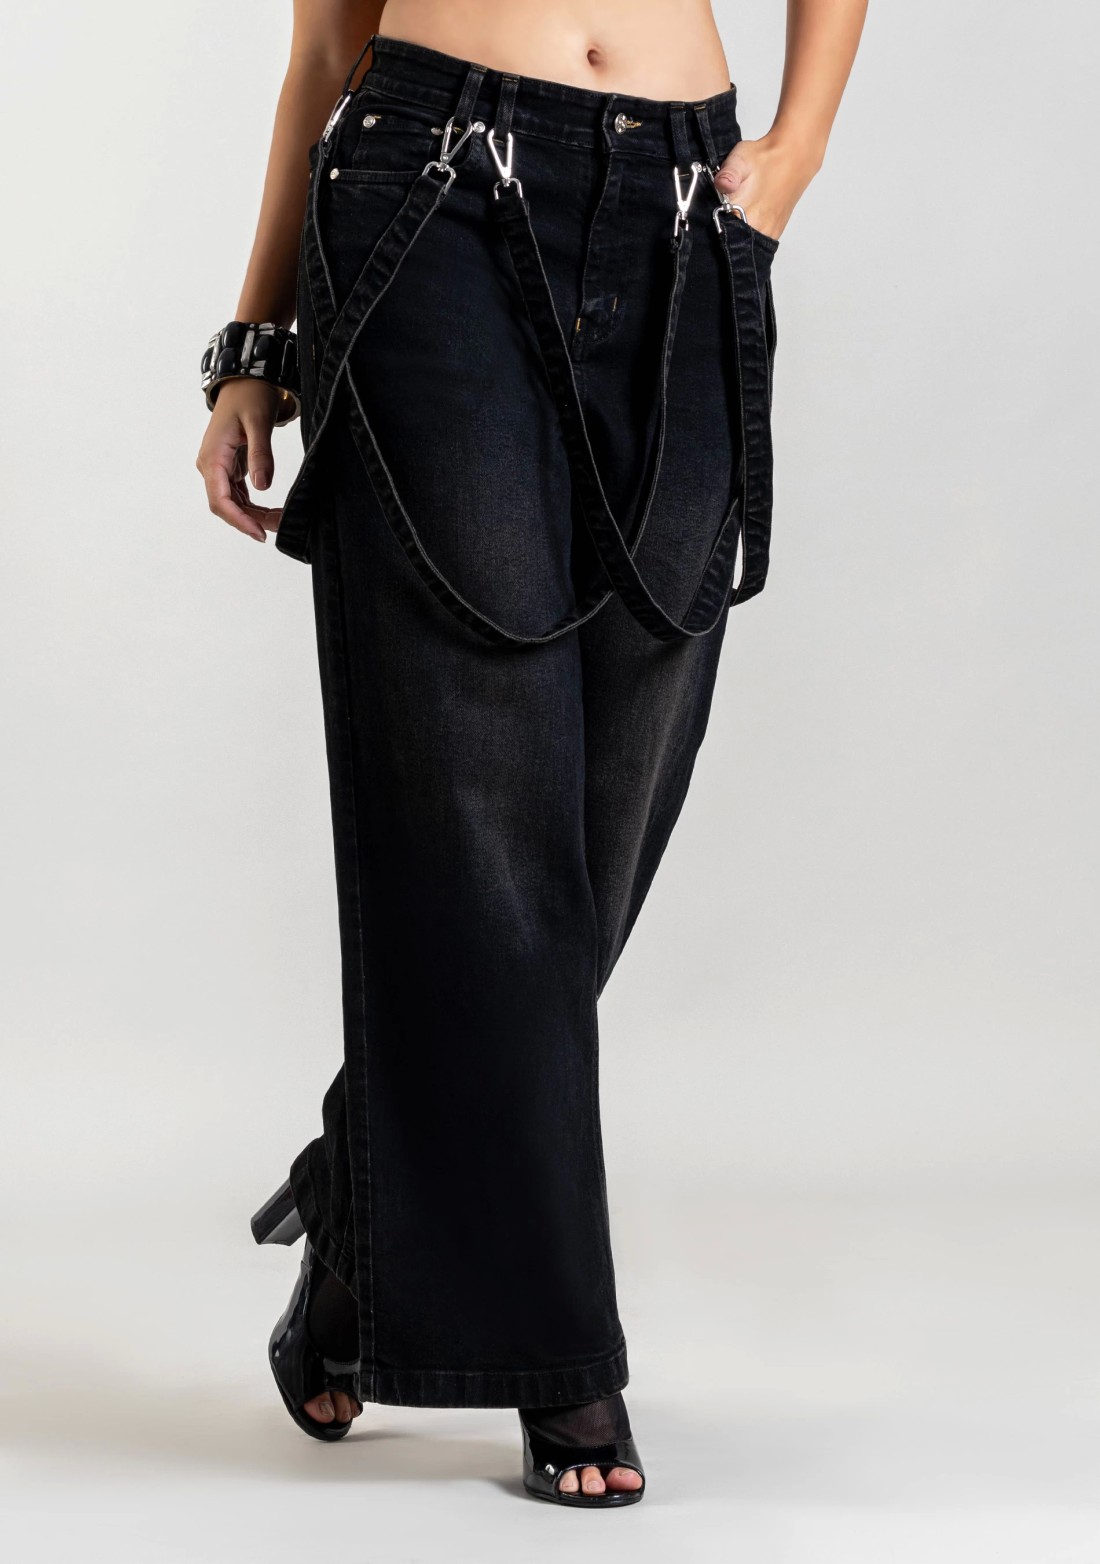 Black Wide Leg  Women's Fashion Jeans